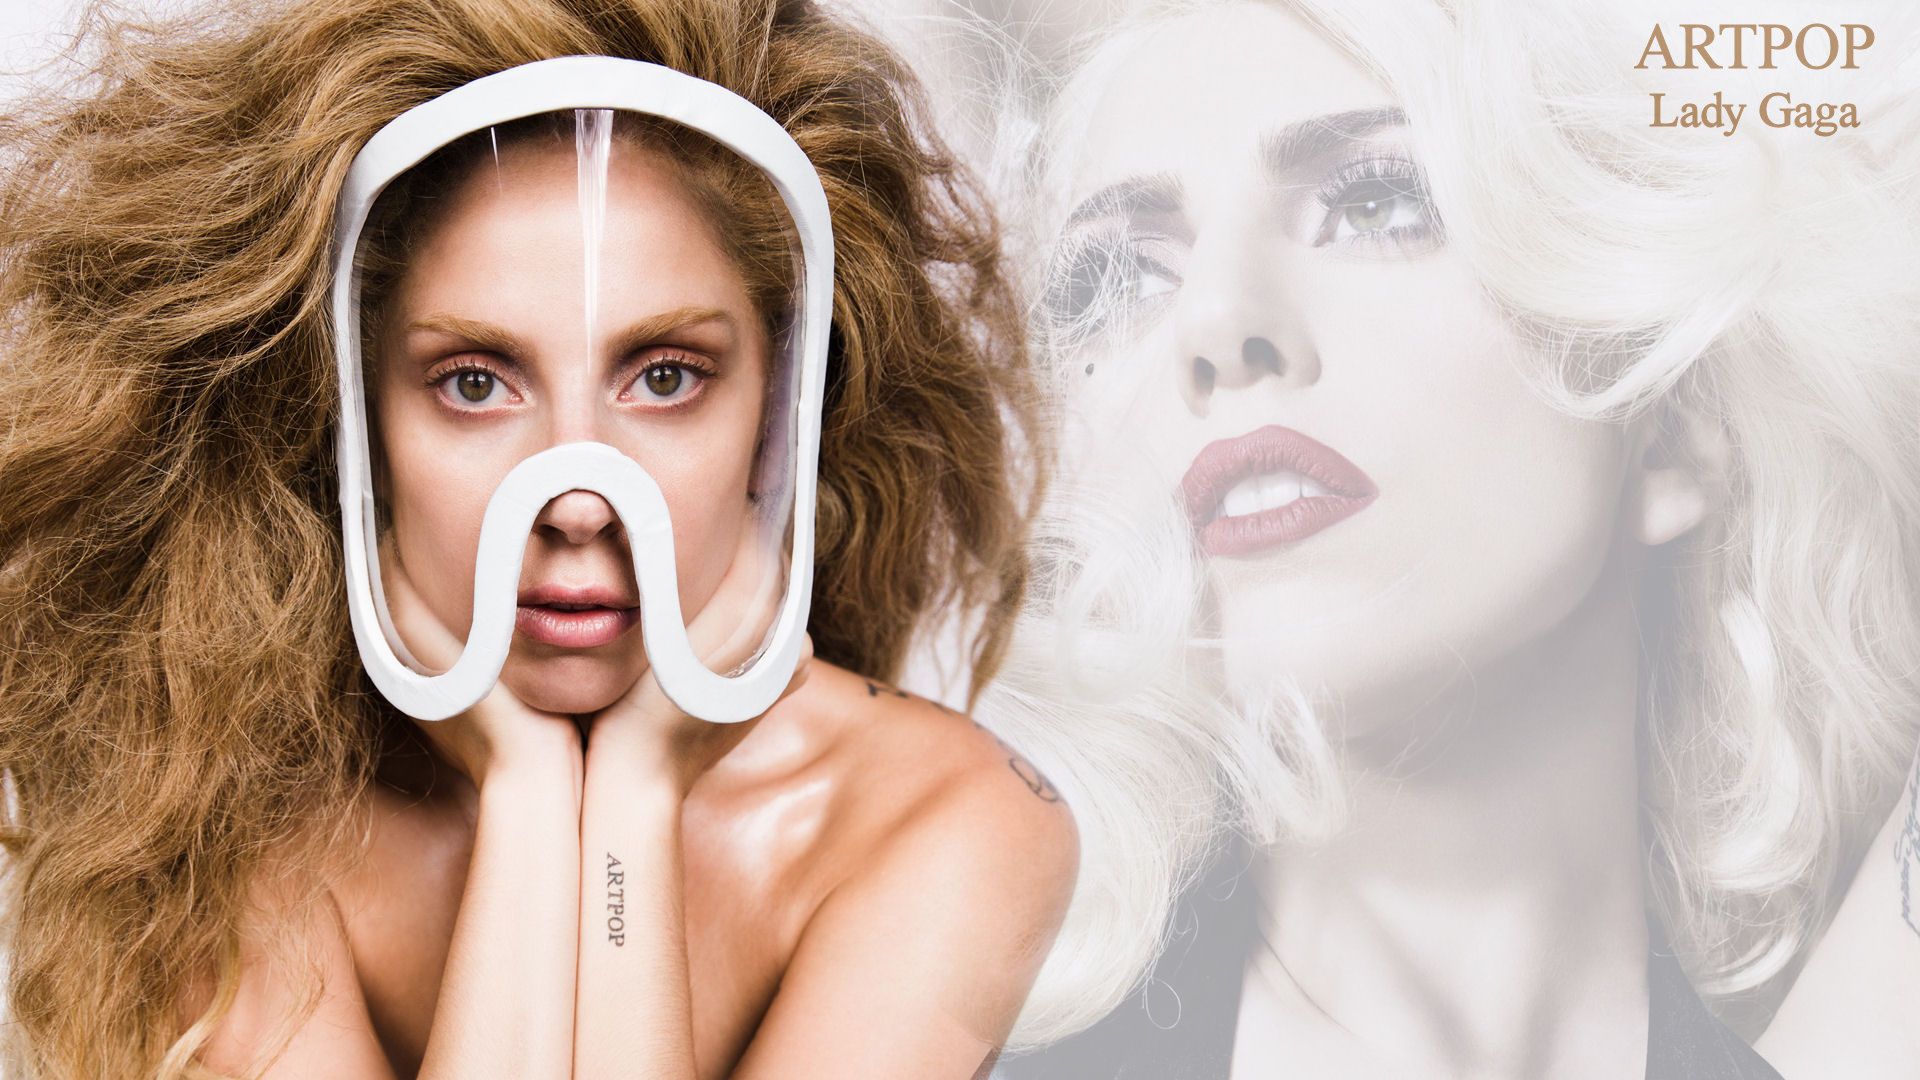 Lady Gaga ARTPOP (2013) - Lady Gaga Wallpaper (35022414) - Fanpop